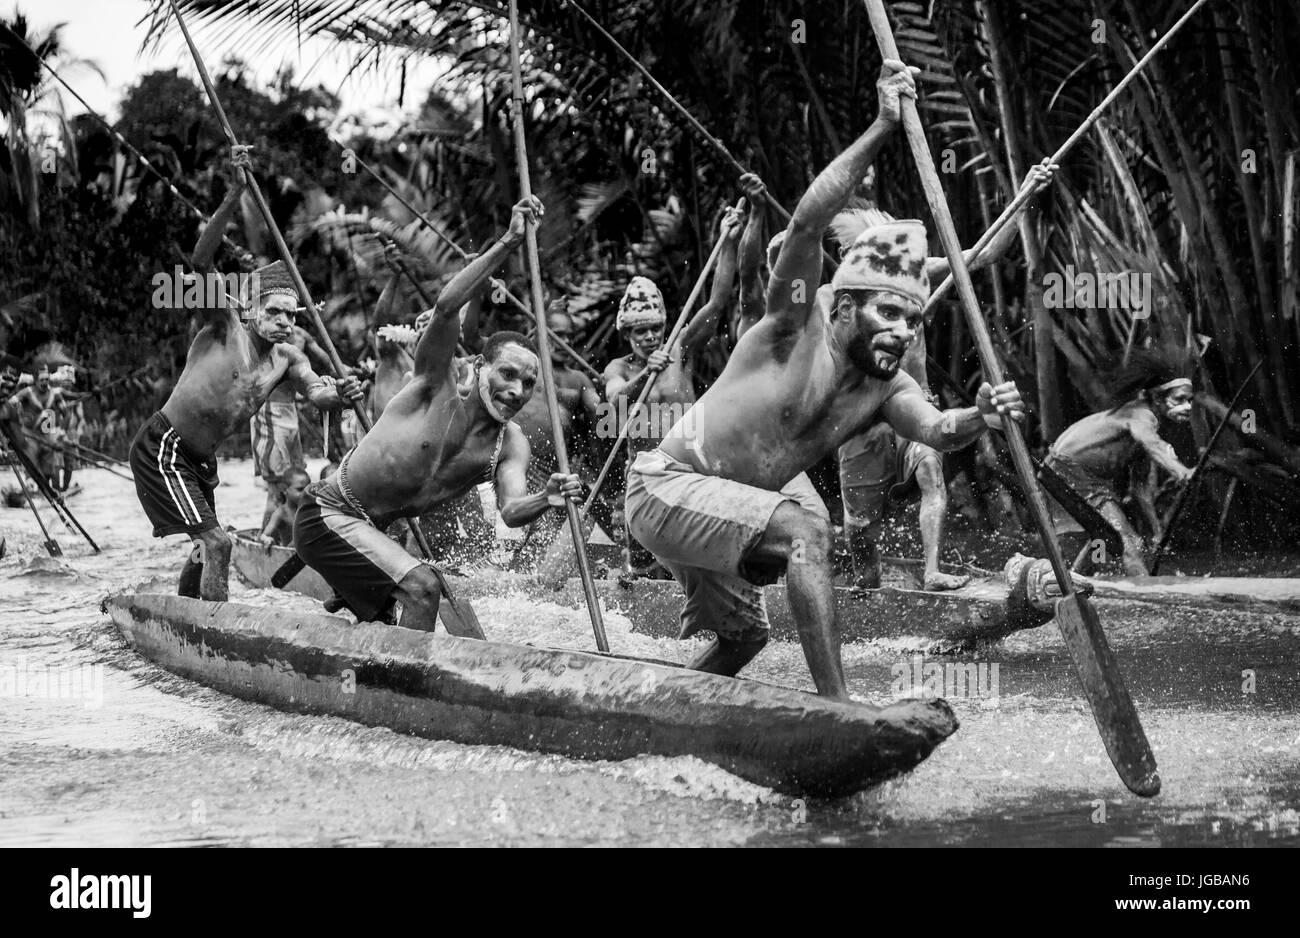 Indonesien, IRIAN JAYA, ASMAT Provinz, JOW Dorf - Juni 12: Krieger Asmat Stamm sind traditionelle Kanu verwenden. Stockfoto